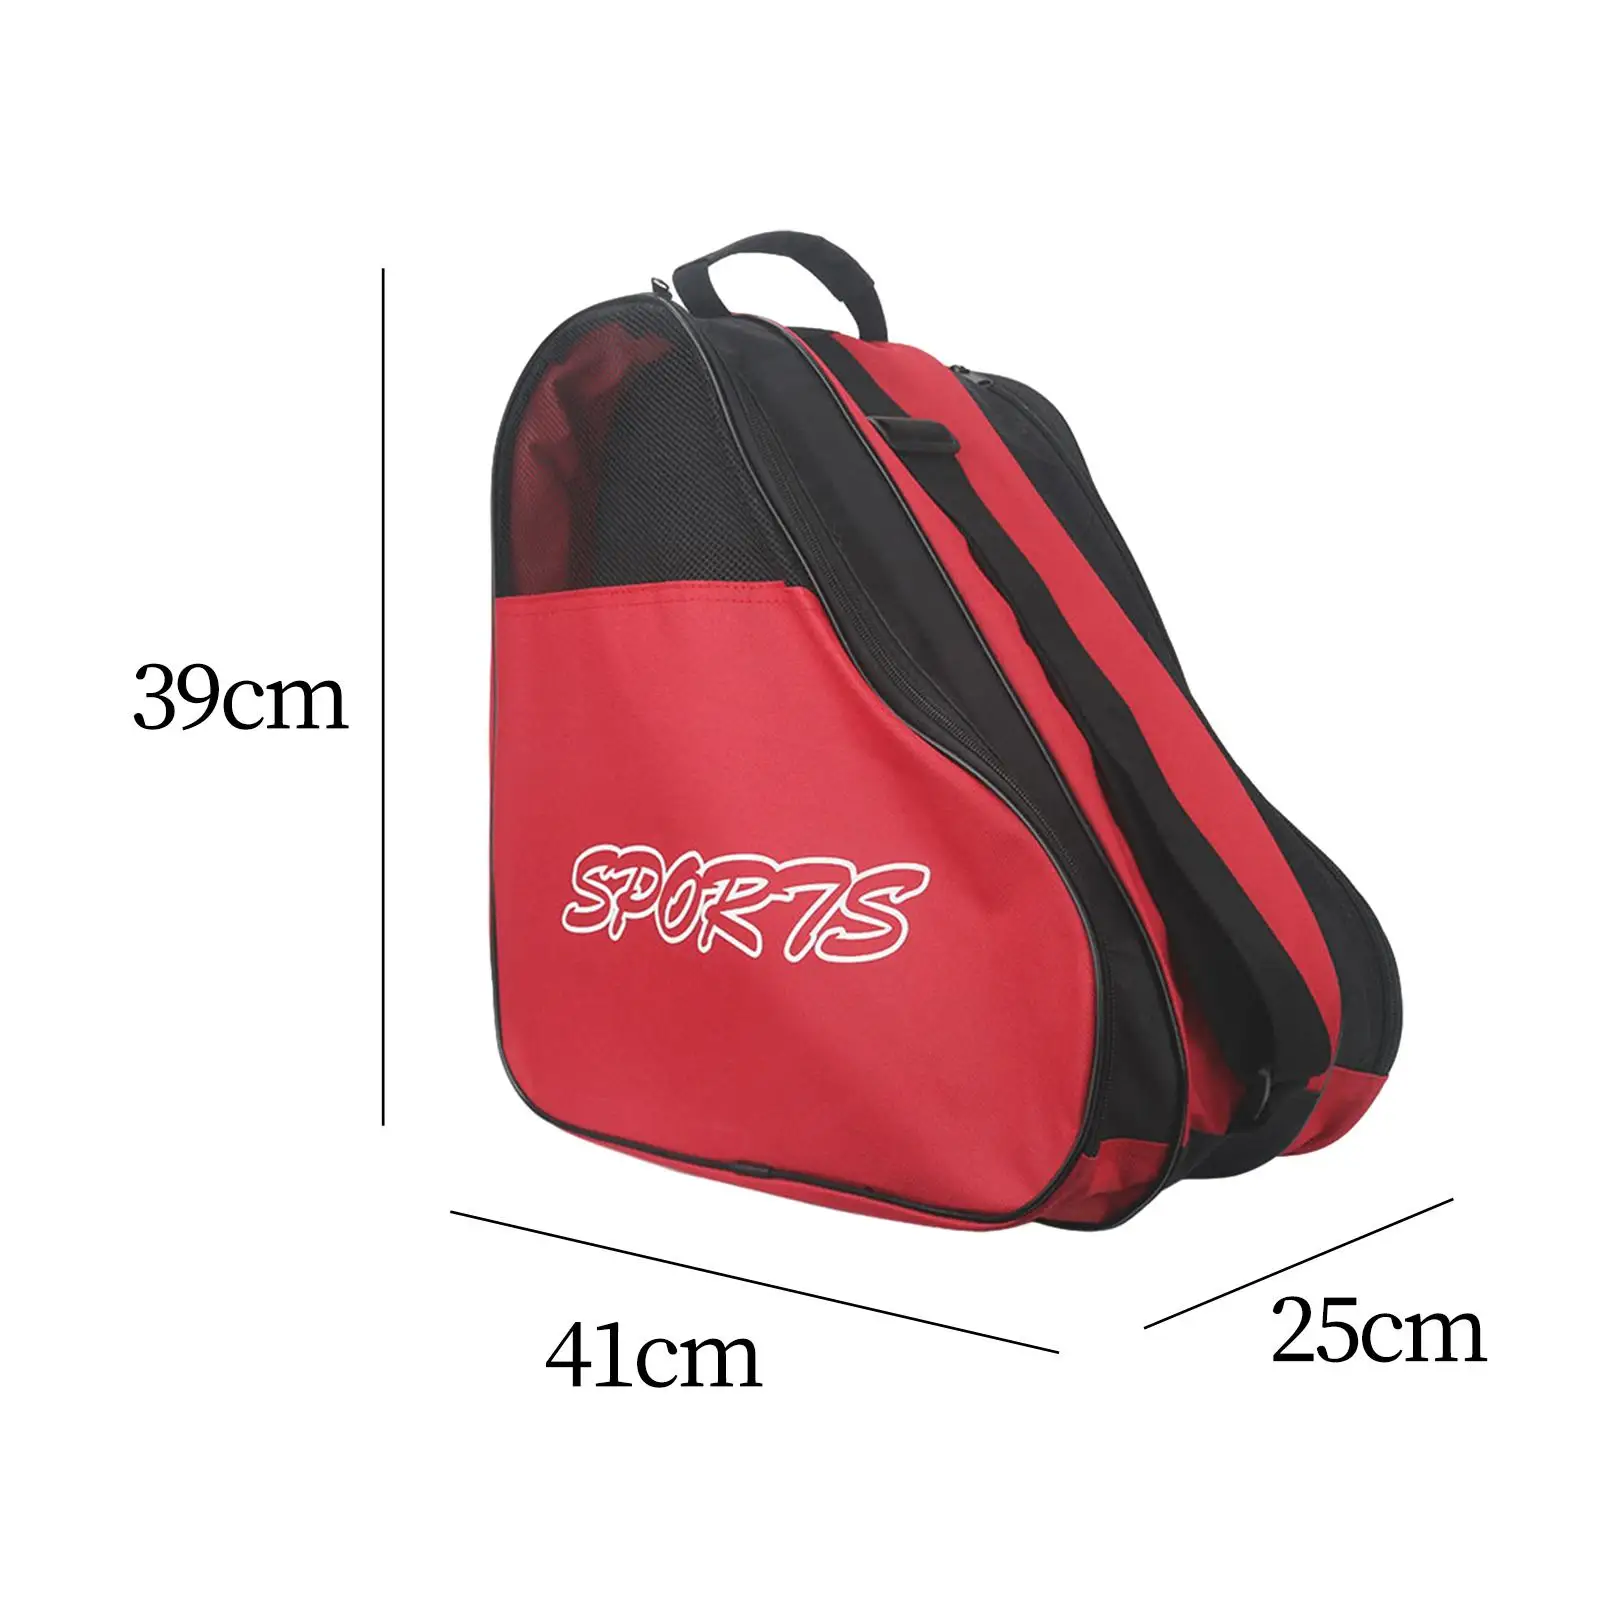 Skating Shoes Bag Breathable Adjustable Durable Carry Case Large Capacity Roller Skates Bag for Sports Boys Children Girls Kids